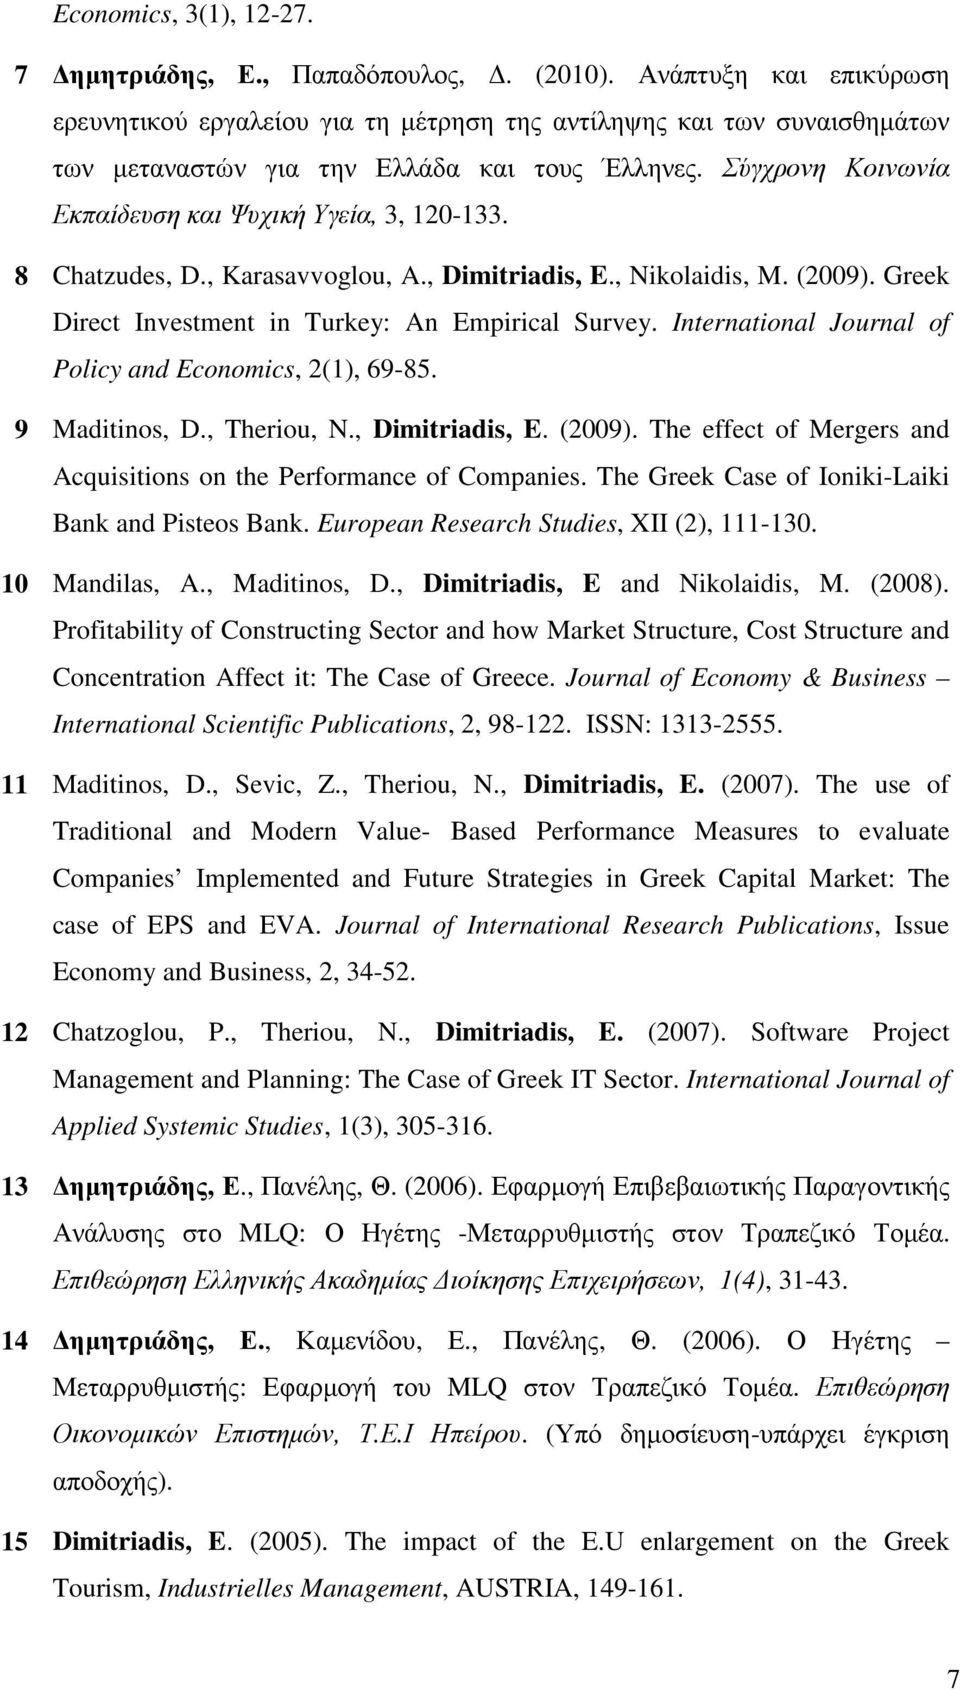 Σύγχρονη Κοινωνία Εκπαίδευση και Ψυχική Υγεία, 3, 120-133. 8 Chatzudes, D., Karasavvoglou, A., Dimitriadis, E., Nikolaidis, M. (2009). Greek Direct Investment in Turkey: An Empirical Survey.